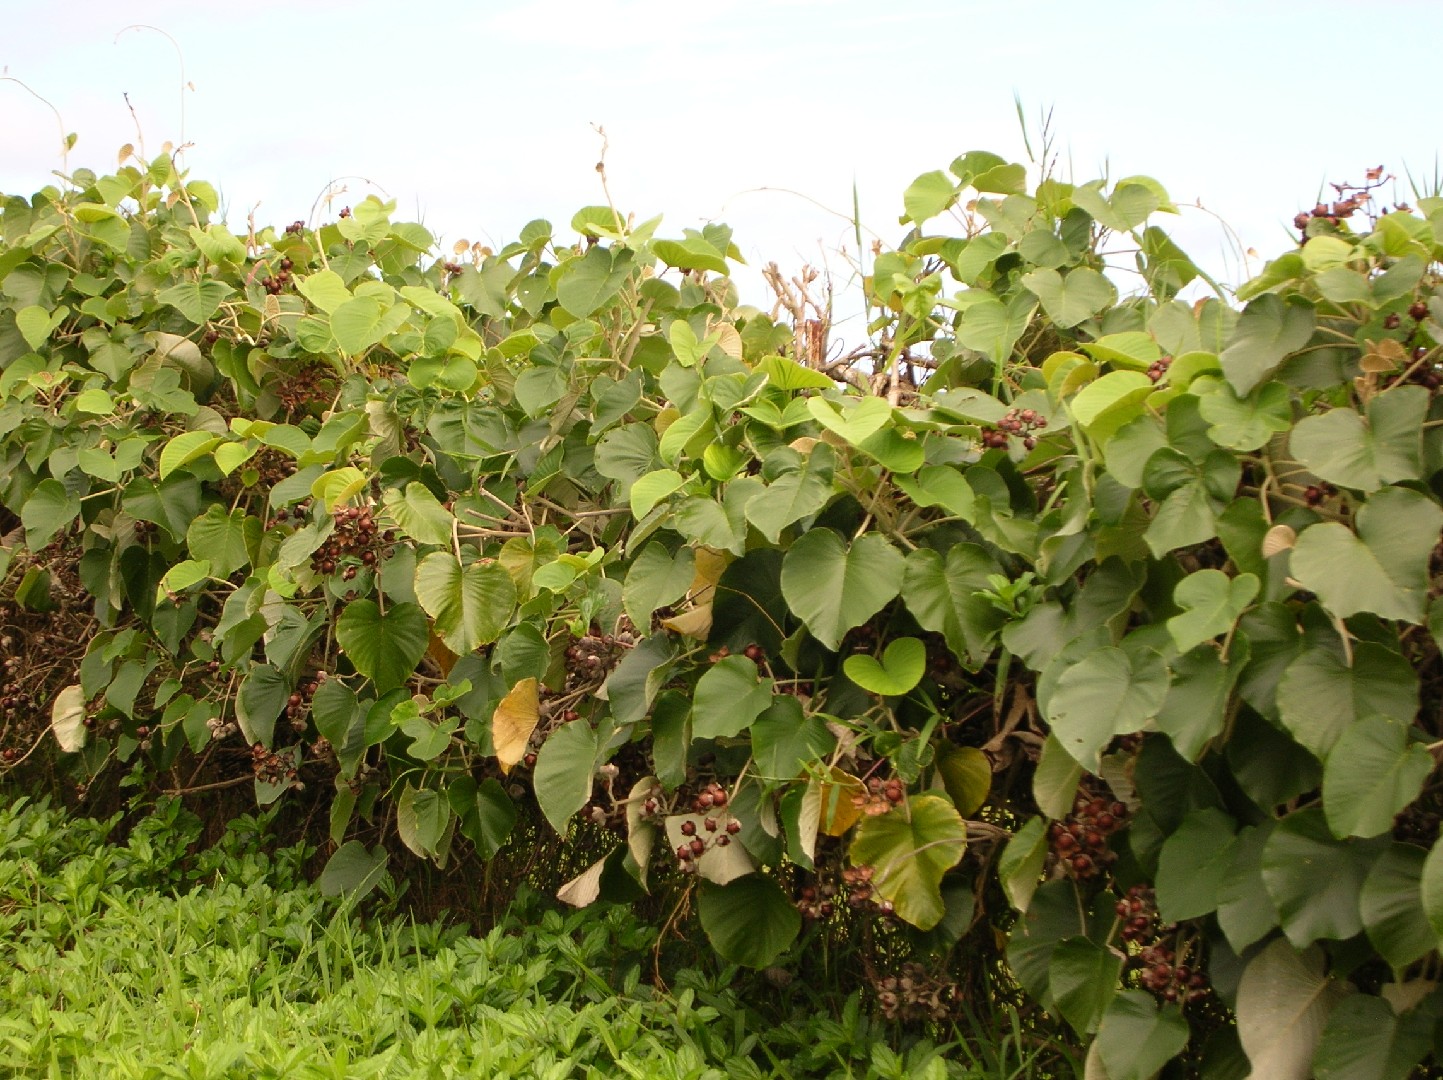 【無農薬・無消毒】ハワイアンベイビーウッドローズ（オオバアサガオ）の種 100粒